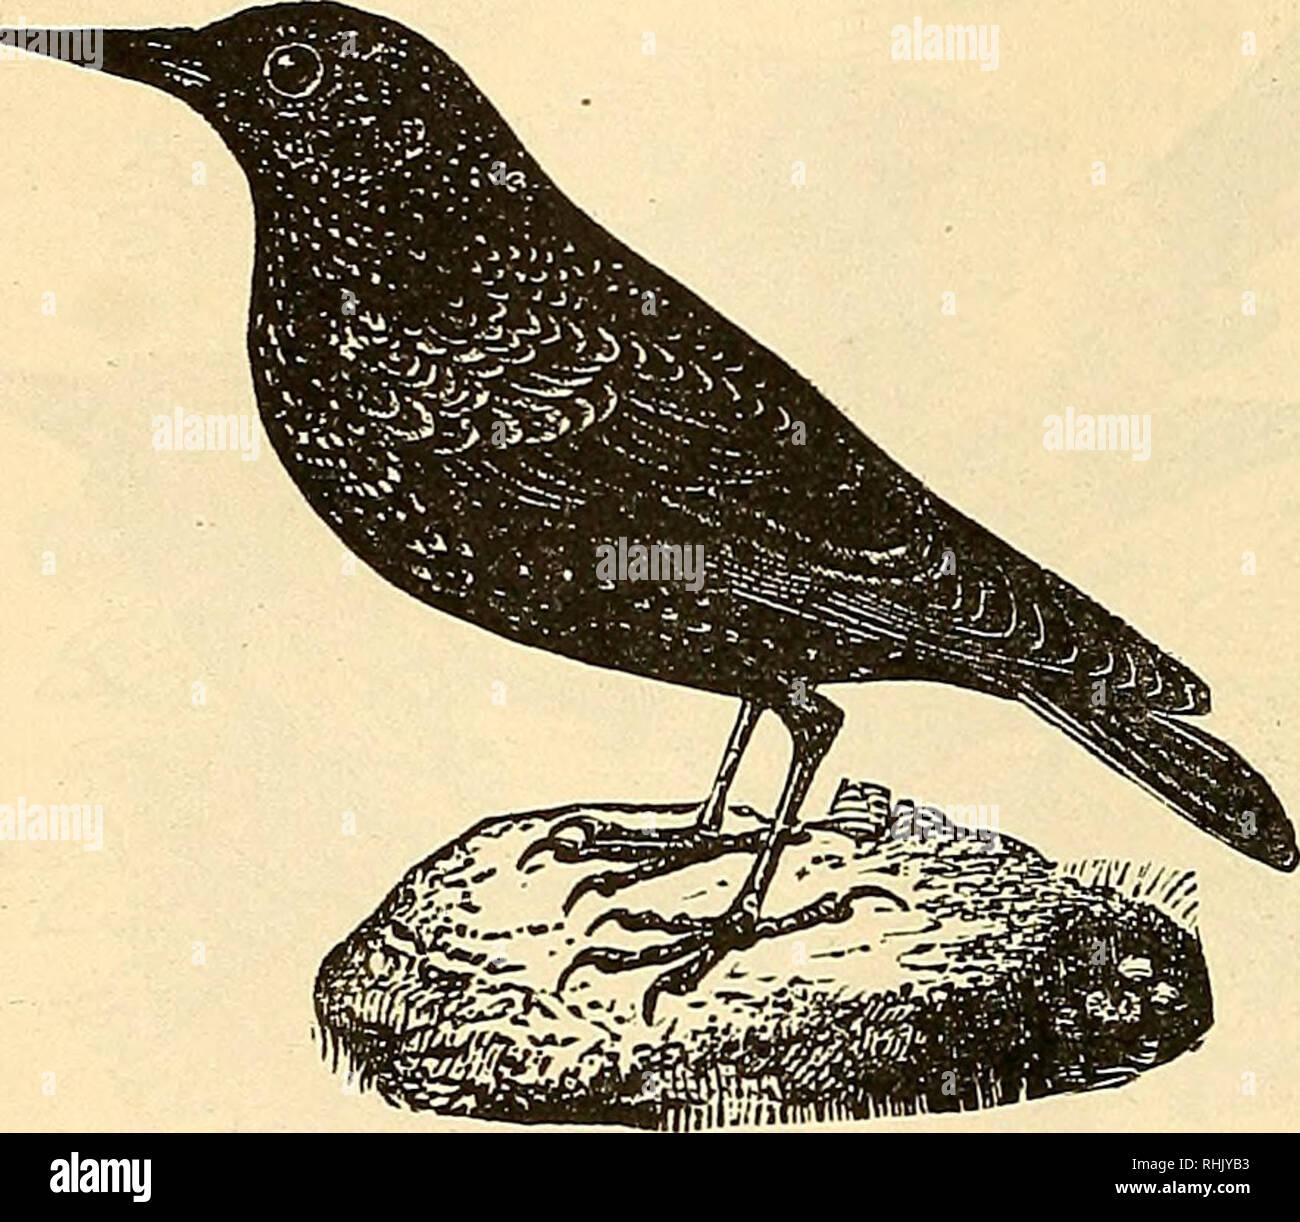 . L'Uccello azienda alimentare il libro di gabbia di uccelli:. Gli uccelli da voliera. La STARLING. La stella ling è uno oi i più dotati di talento di uccelli. La sua discrezione i s meravigliosa - Egli può cantare, fischio, e parlare. L'ultimo accompa- plishment canbetaught a lui al- la maggior parte come leggere- ily come a un pappagallo. Dimensioni, egli è più grande di una mucca nero- bird ed è di un illustre verdastro-nero, con macchie di colore verdastro al di sopra del corpo; il disegno di legge è di colore marrone. Per gli storni richiedono una grande dimensione Mockmg Bird Cage, e dovrebbe essere alimentato al preparato beffardo Bird cibo. Un maschio di Starling, inizio a fischiare, vale la pena di |5.oo- quello che parla, io25.00 per |ioo.oo.. TH Foto Stock